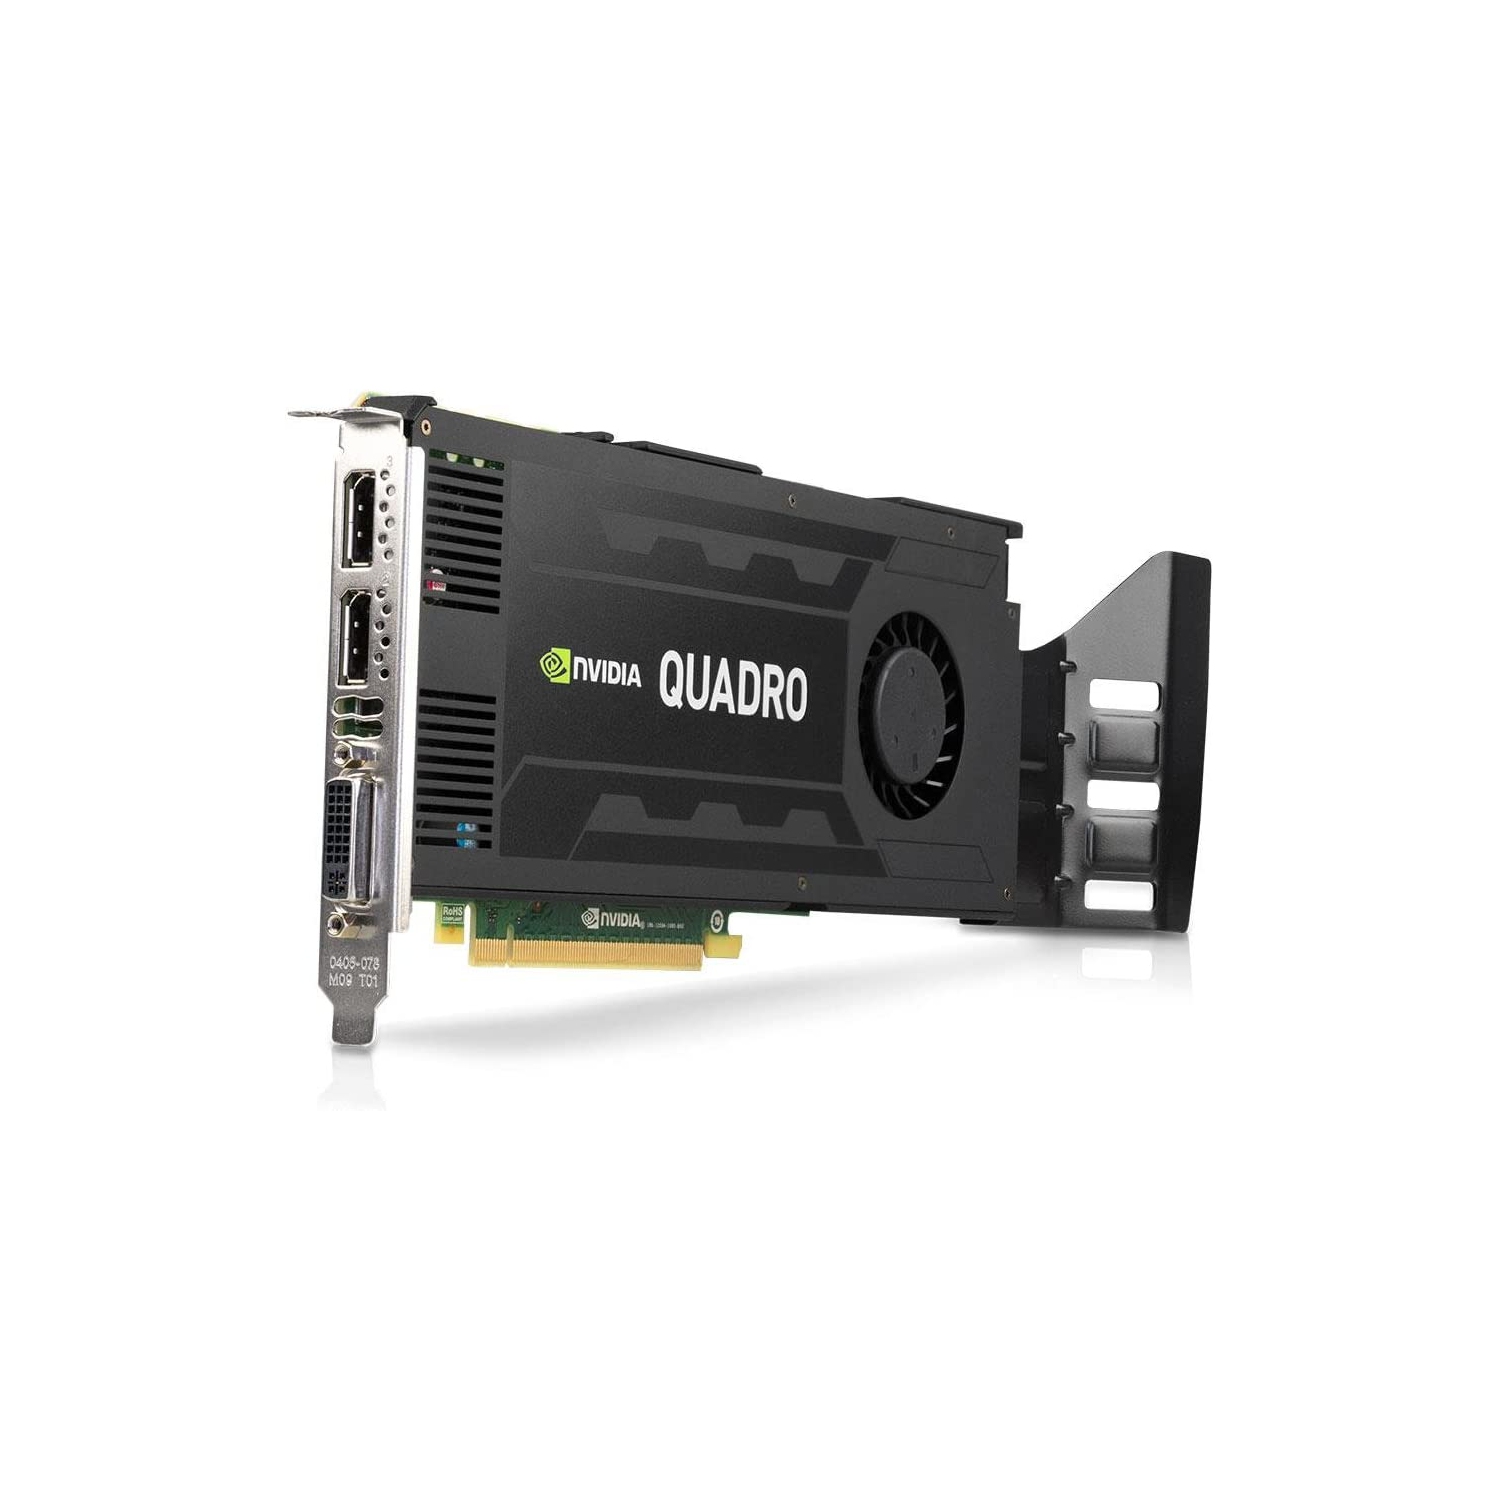 Refurbished (Good) - Nvidia Quadro K4200 4GB GDDR5 256-bit PCI Express 2.0 x16 Full Height Graphics Video Card